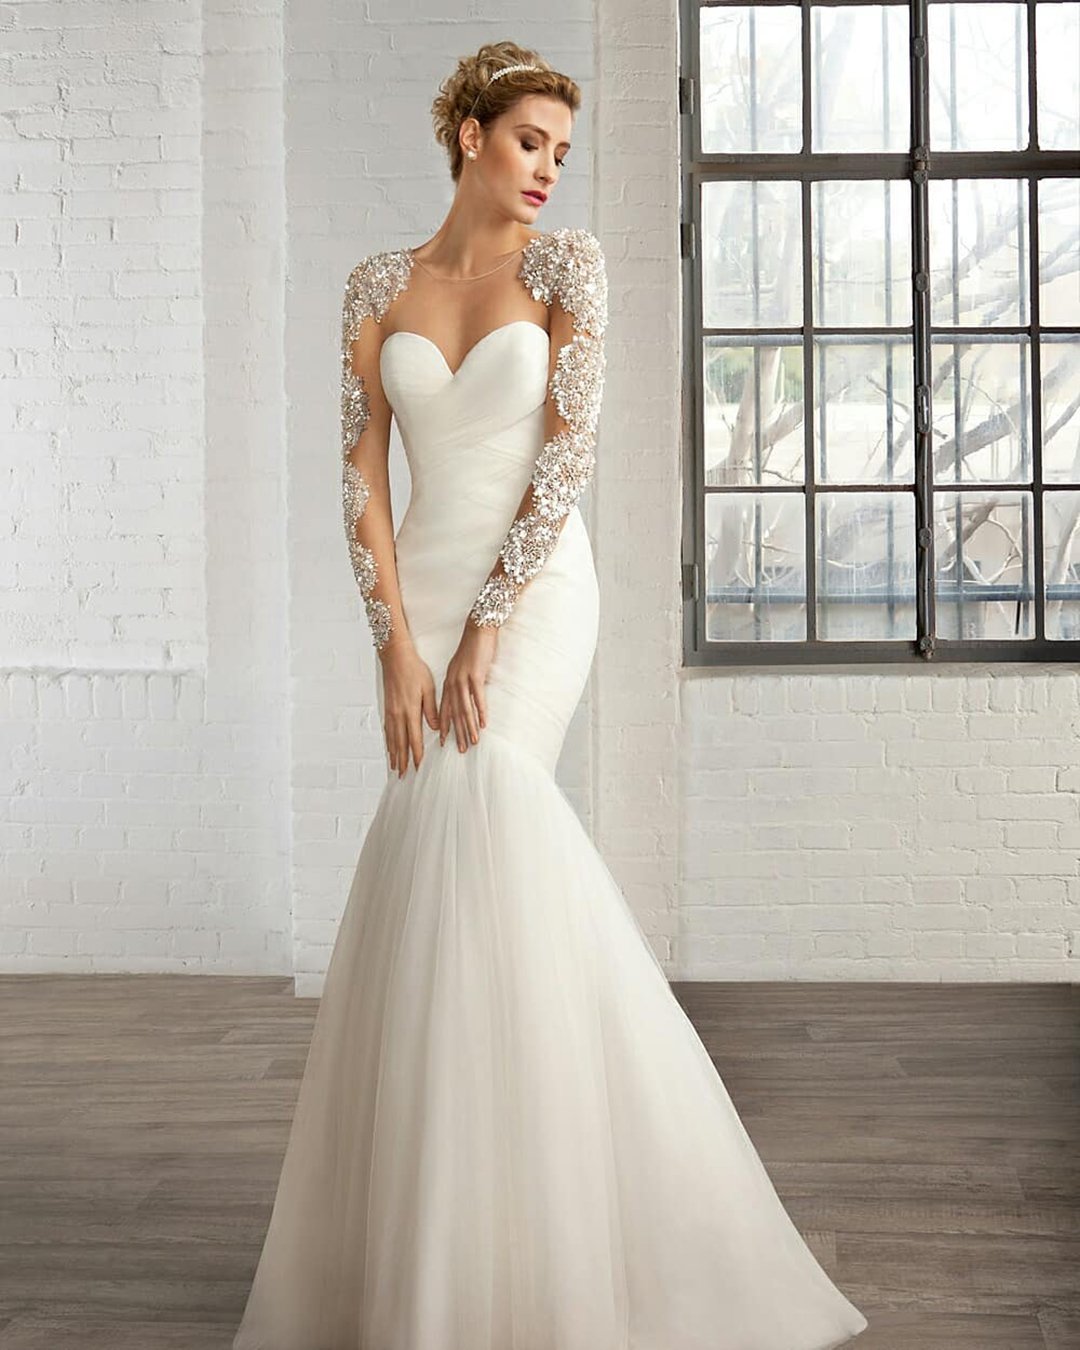 sweetheart mermaid wedding dresses with long beaded sleeves sweetheart neckline demetrios bride